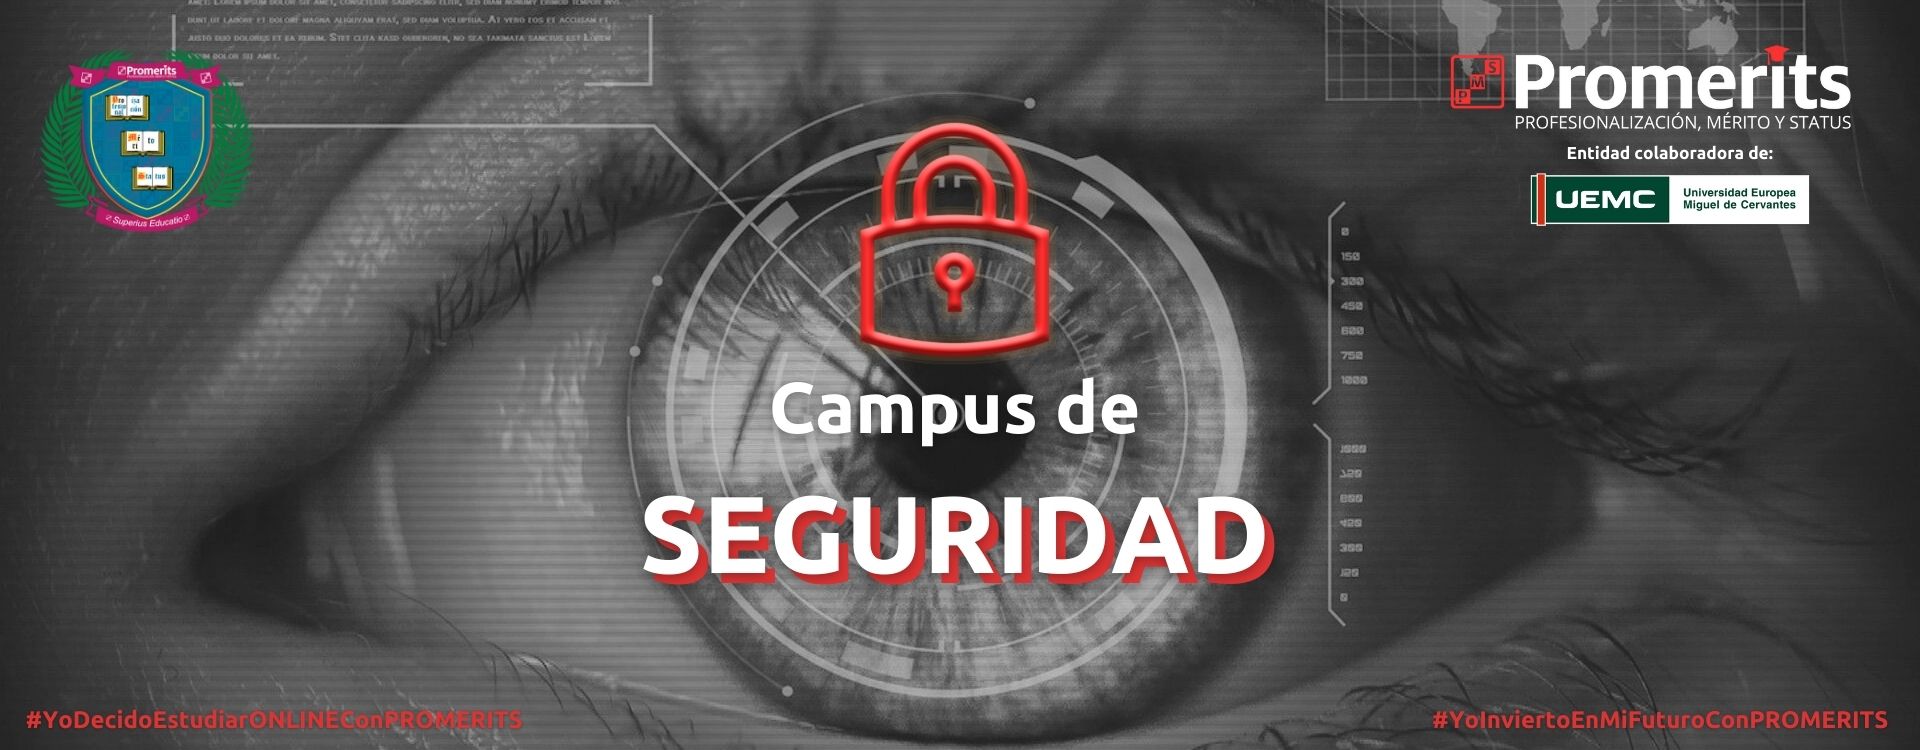 Campus de Seguridad